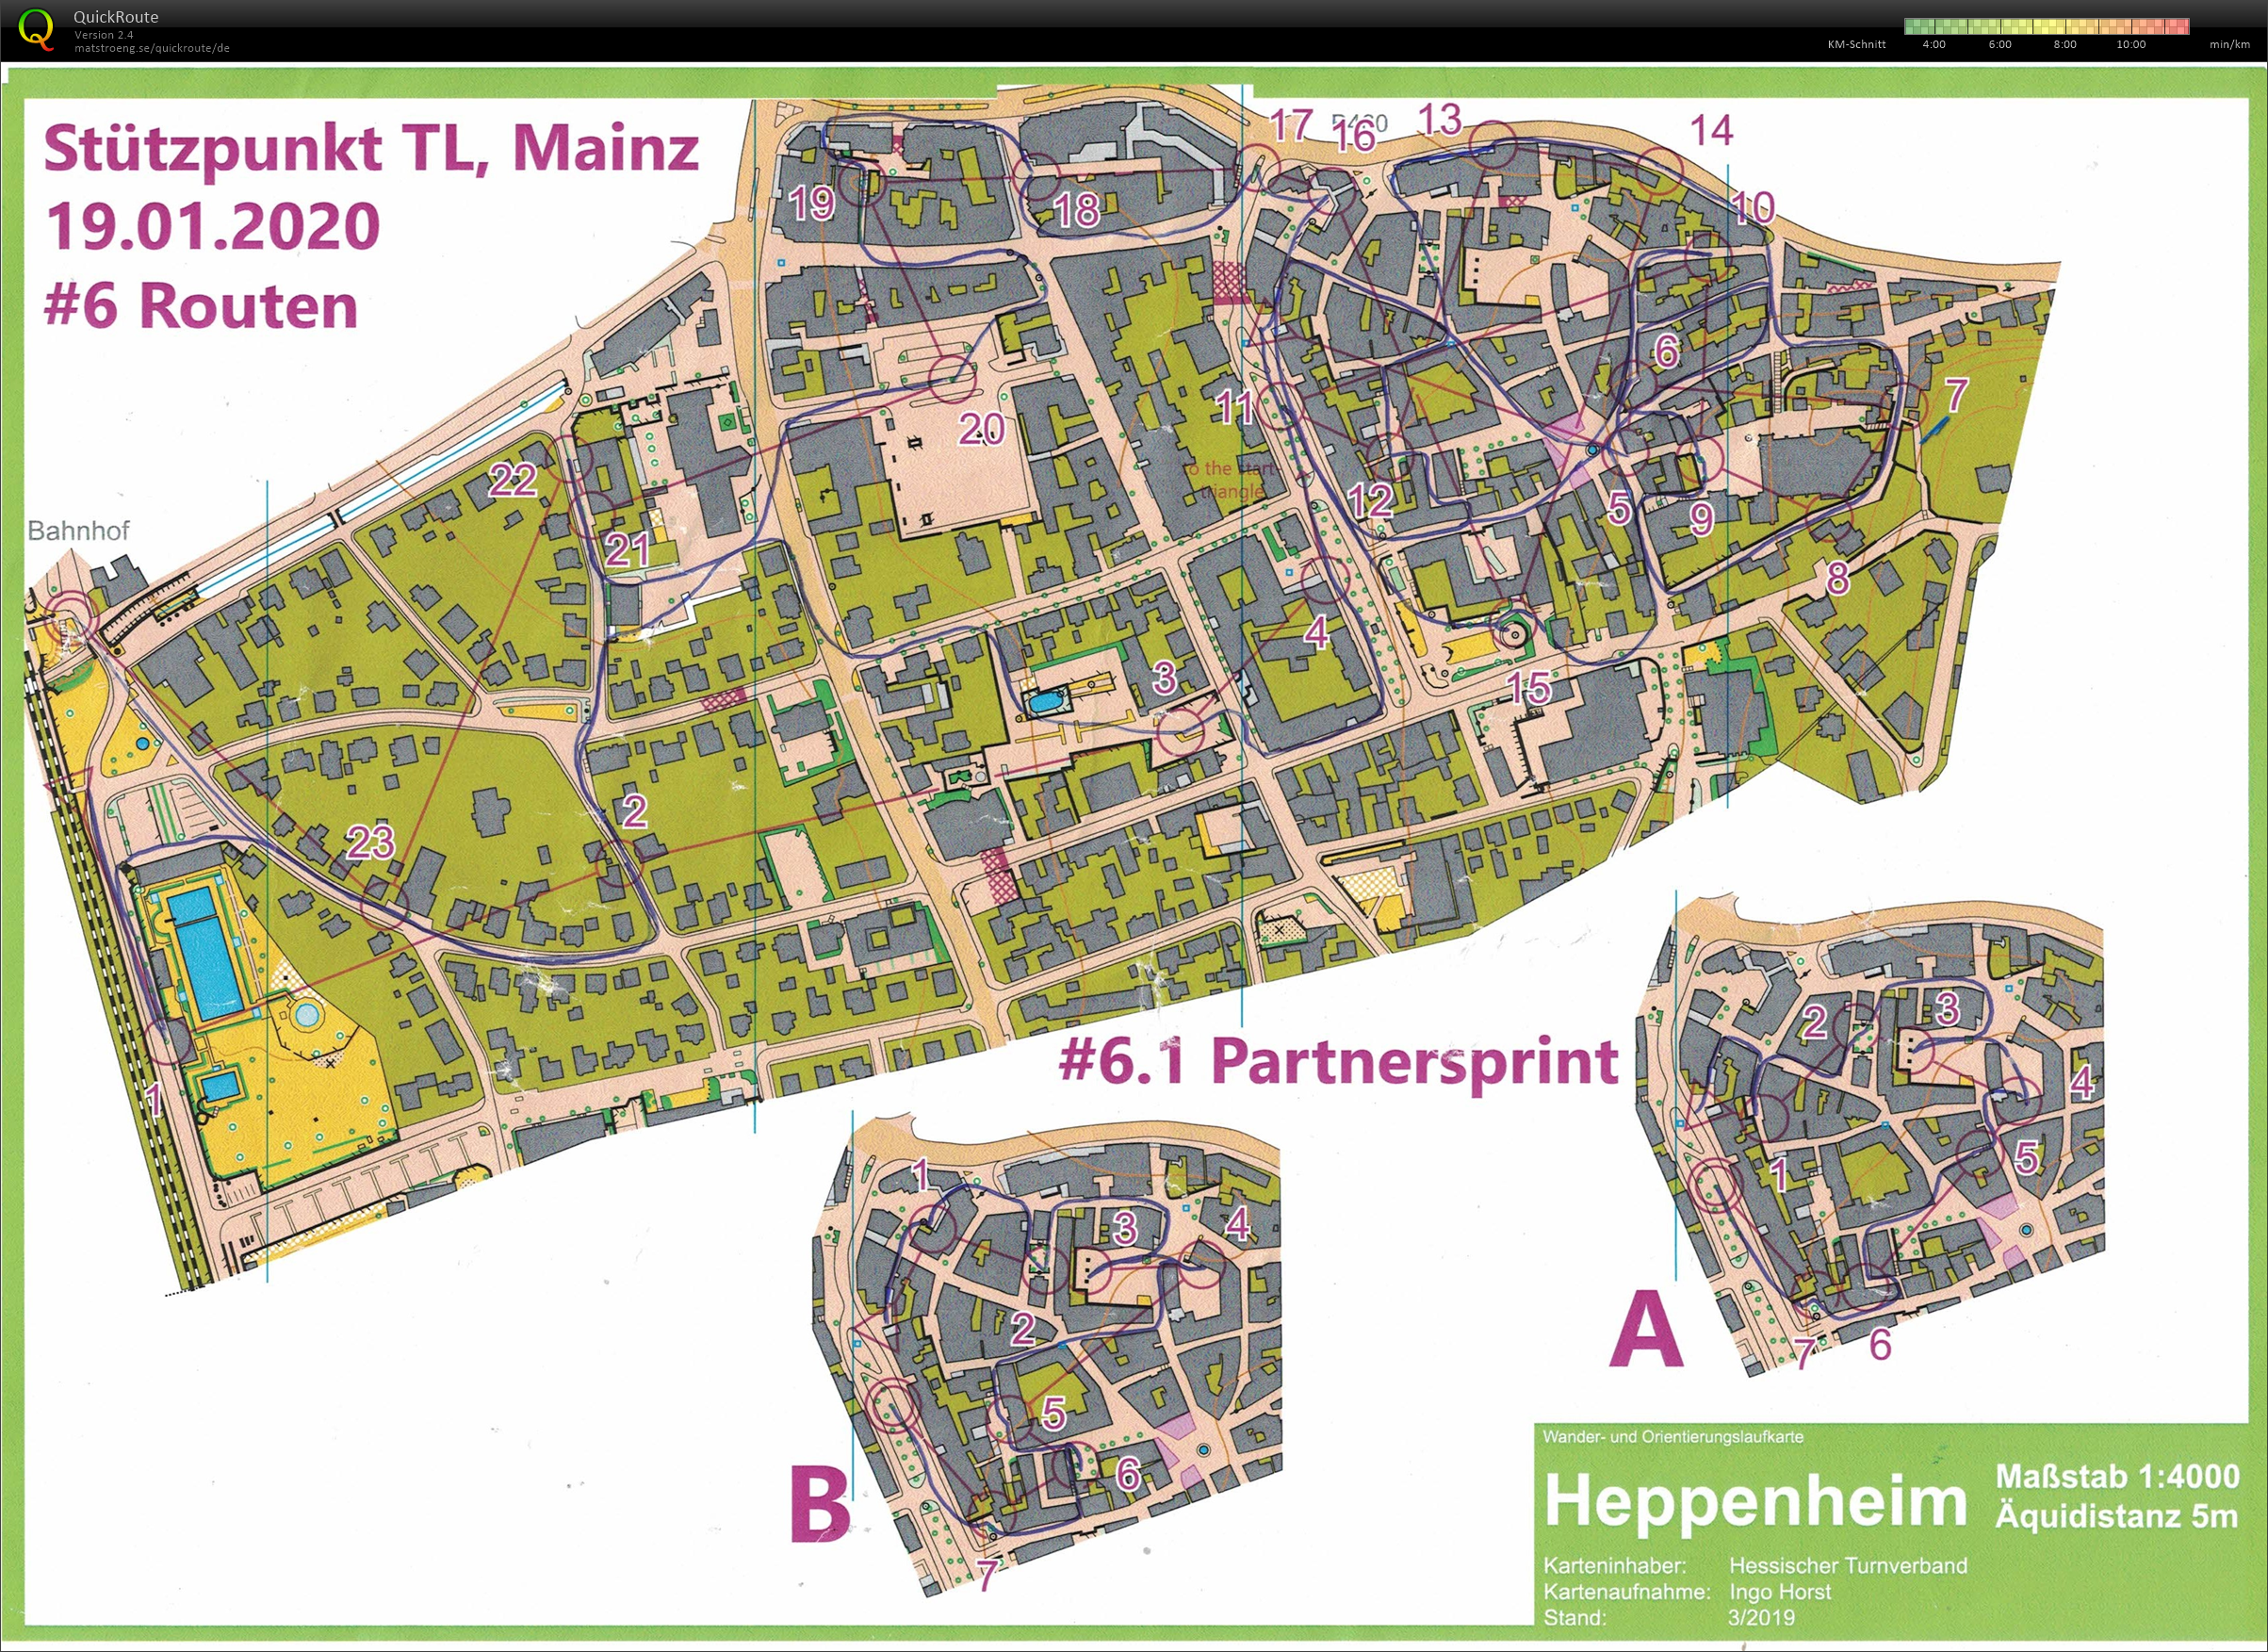 Stützpunkt Mainz: Routen & Paarsprint (19.01.2020)